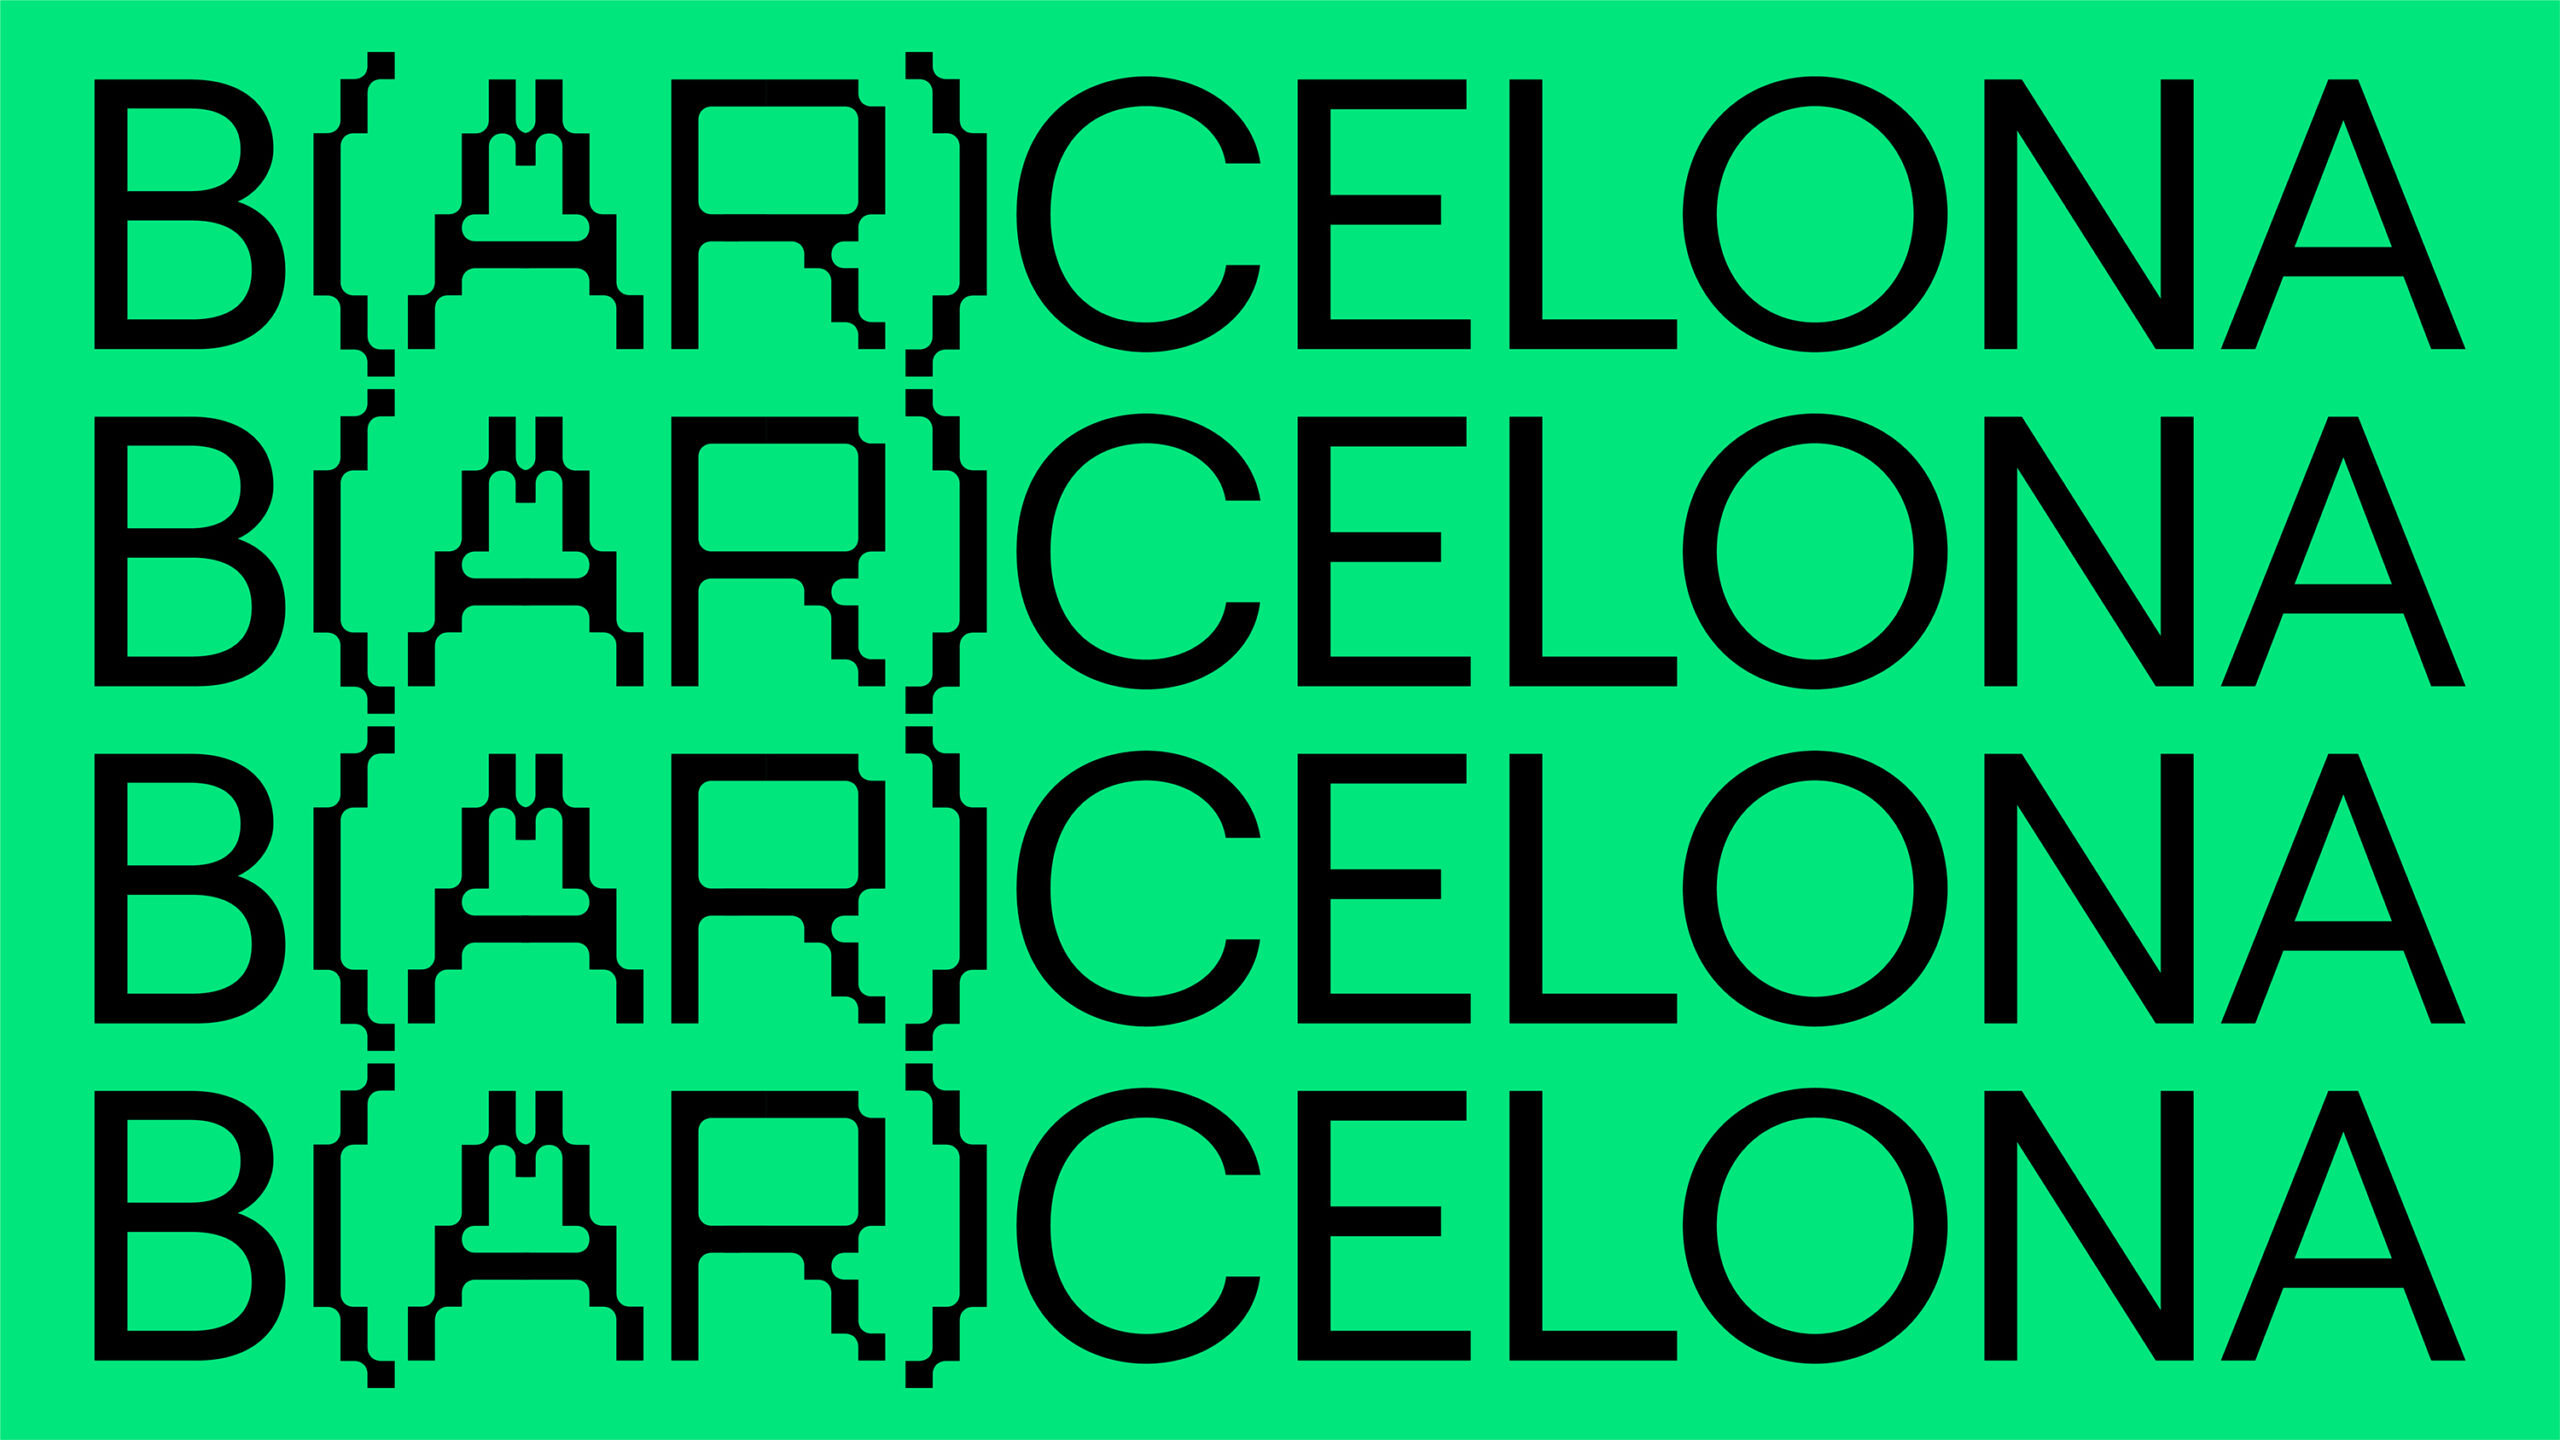 Presentamos B(AR)CELONA, la nueva app de rutas con realidad aumentada | Barcelona centro de Diseño